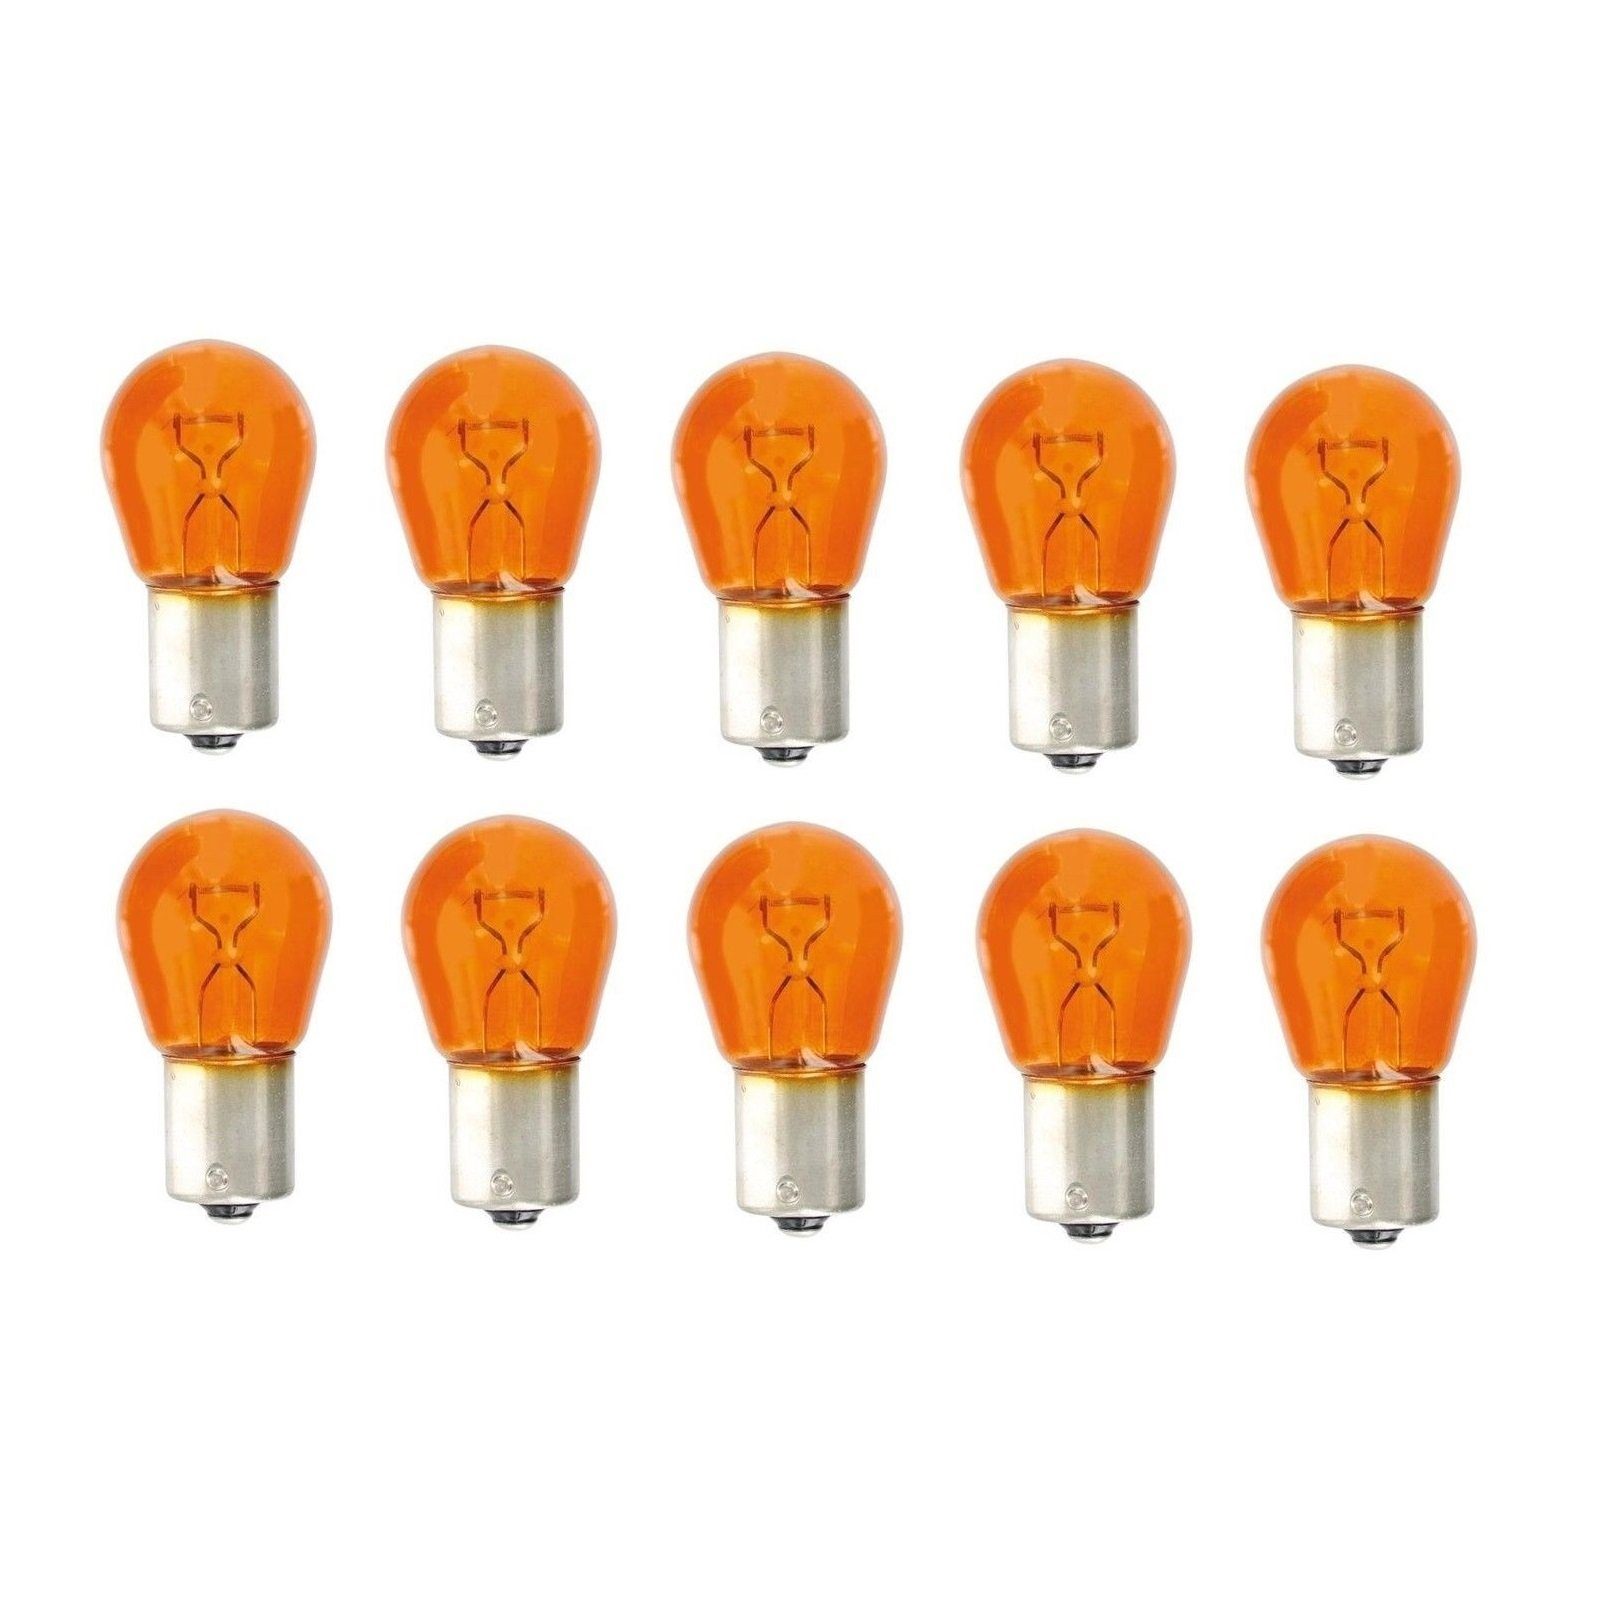 Kummert Business BAU15s Blinker 12V Lampe Kugel orange Blinker Blinkerlampe 21W PY21W